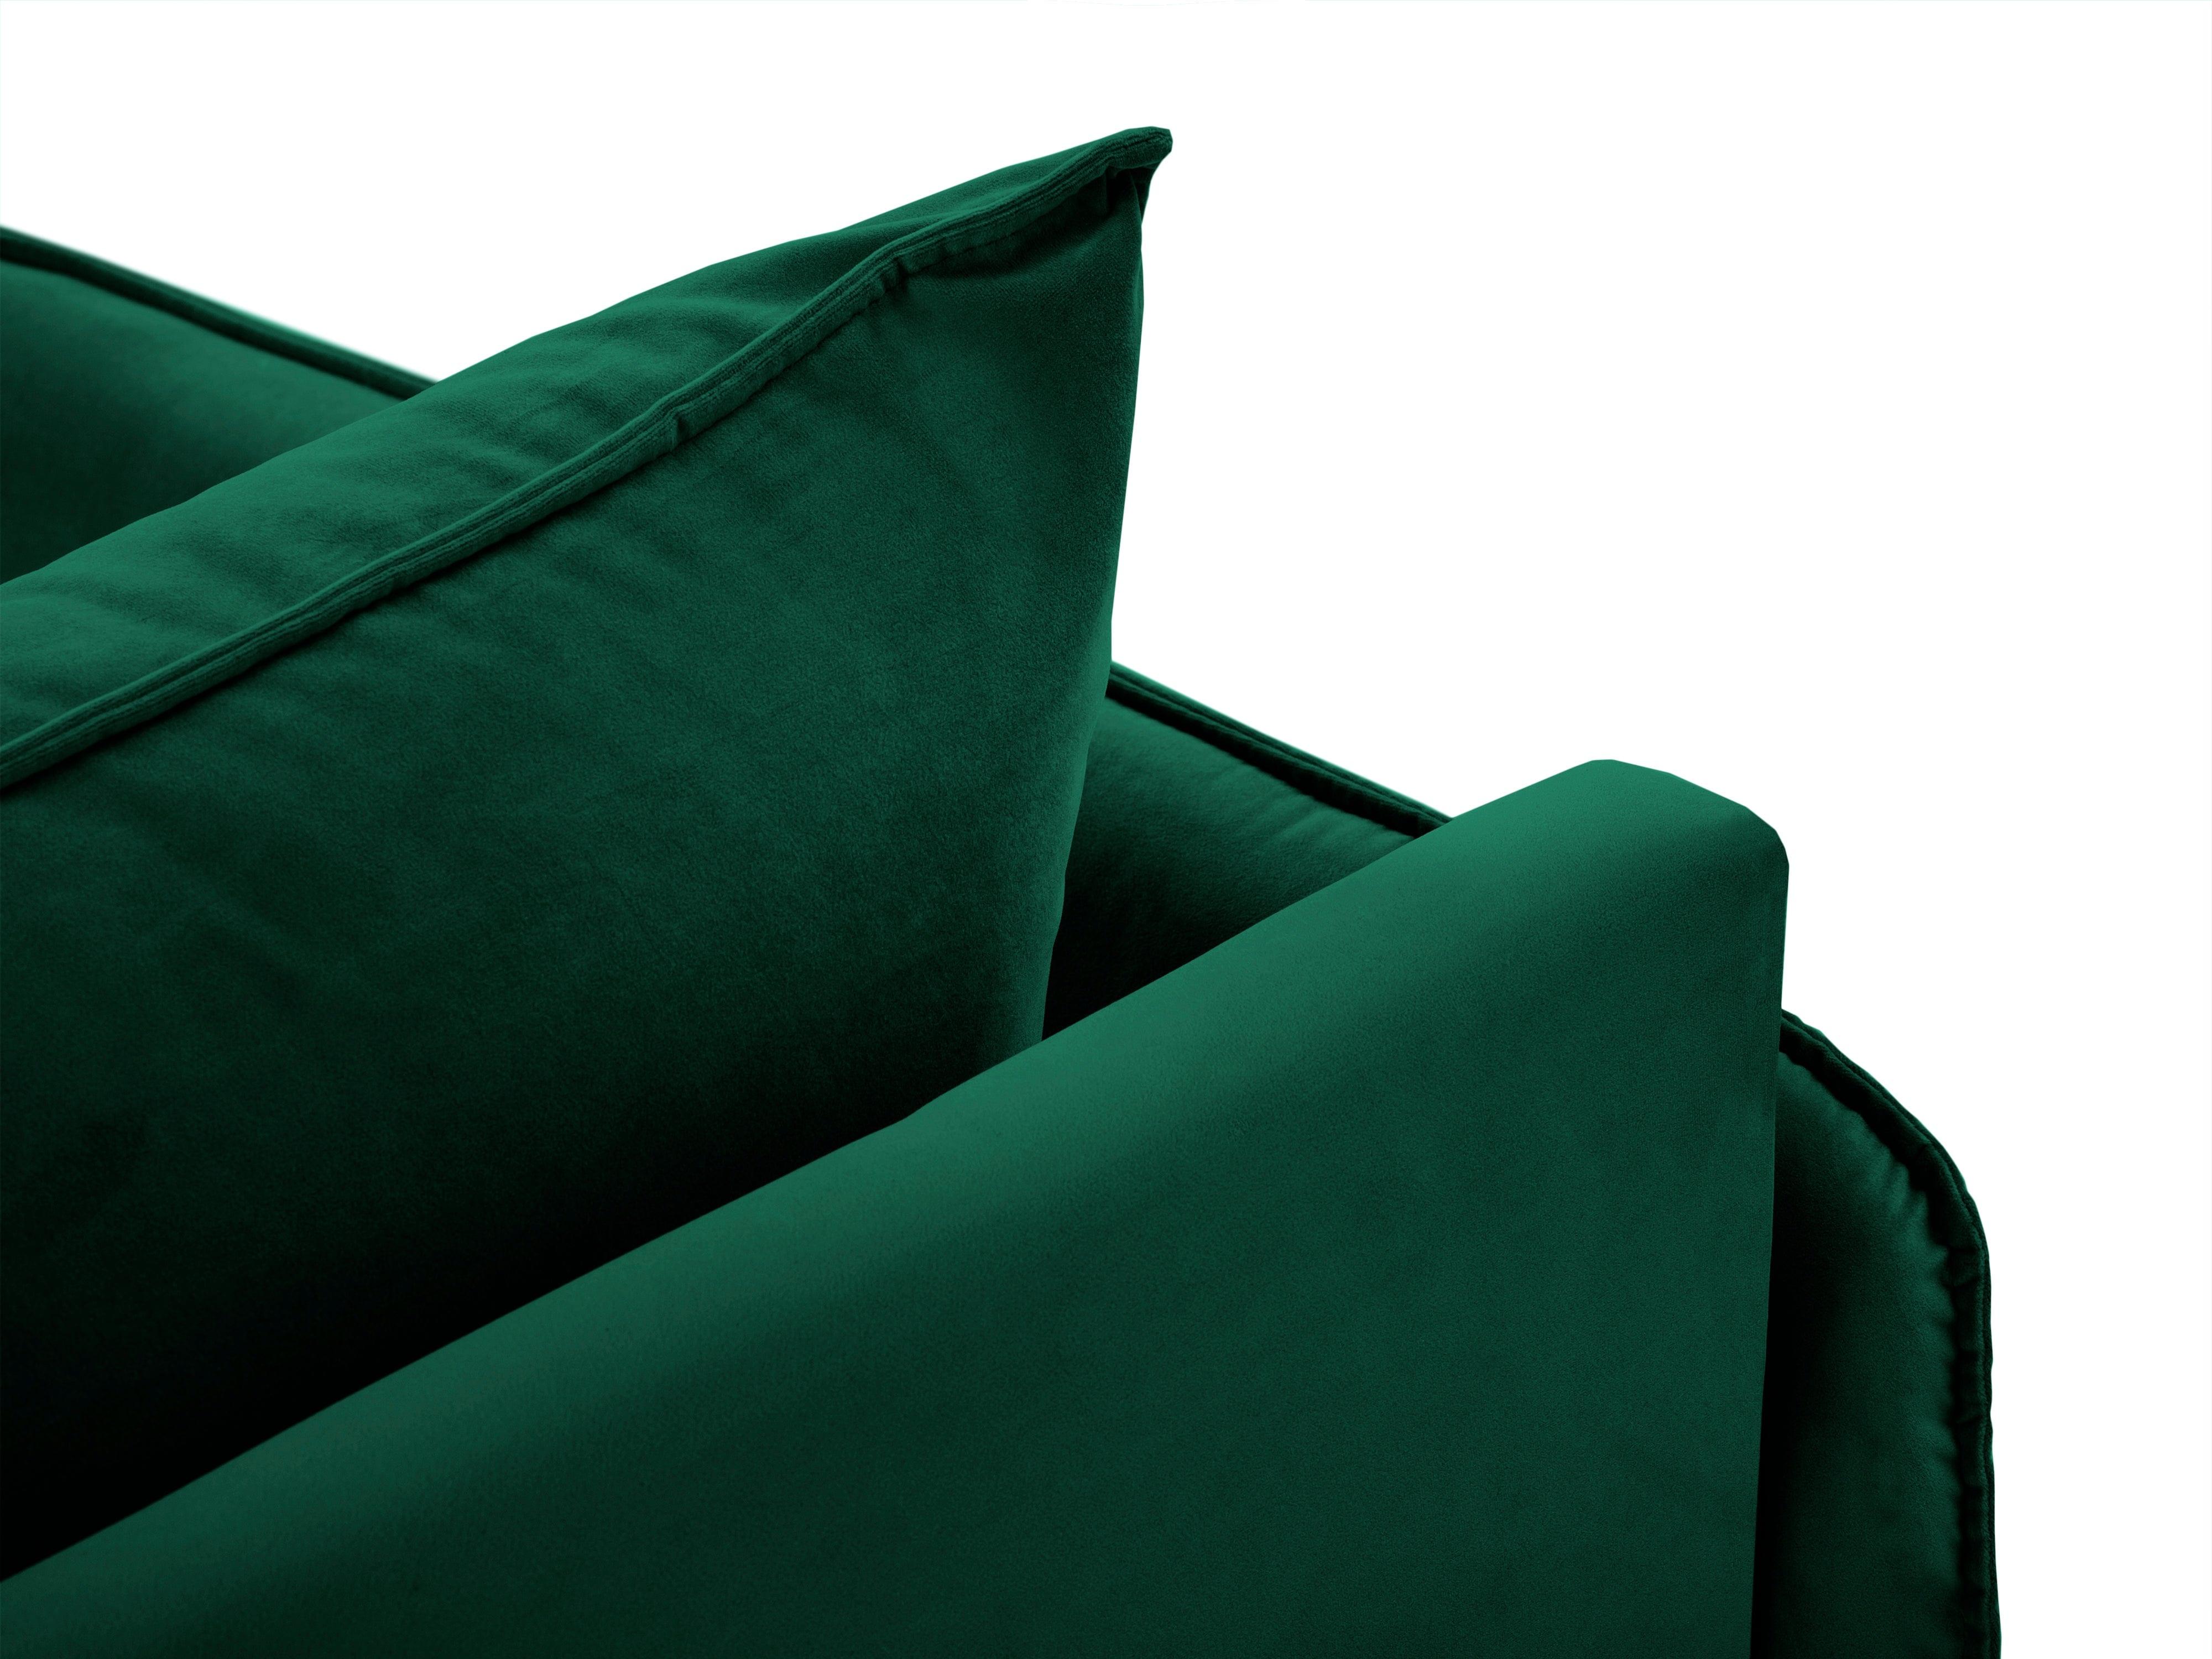 Szezlong aksamitny prawostronny VIENNA zielony z czarną podstawą Cosmopolitan Design    Eye on Design